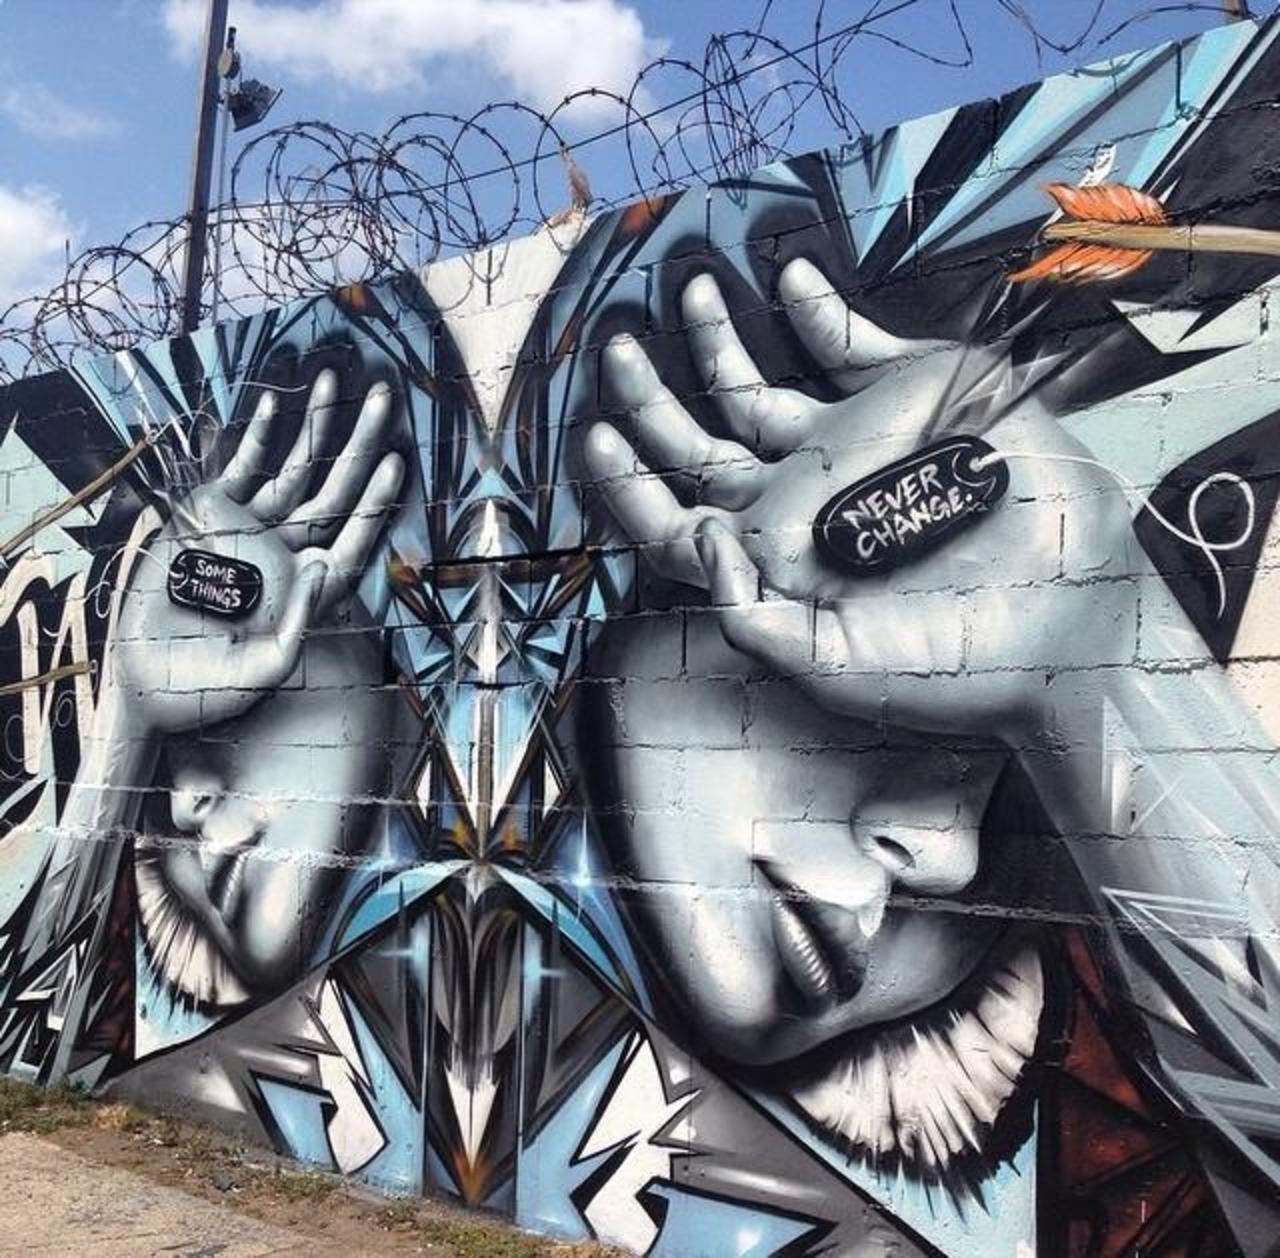 Artist @StarFighterA new Street Art mural titled 'Some Things Never Change' #art #mural #graffiti #streetart http://t.co/v7Wqyon06I